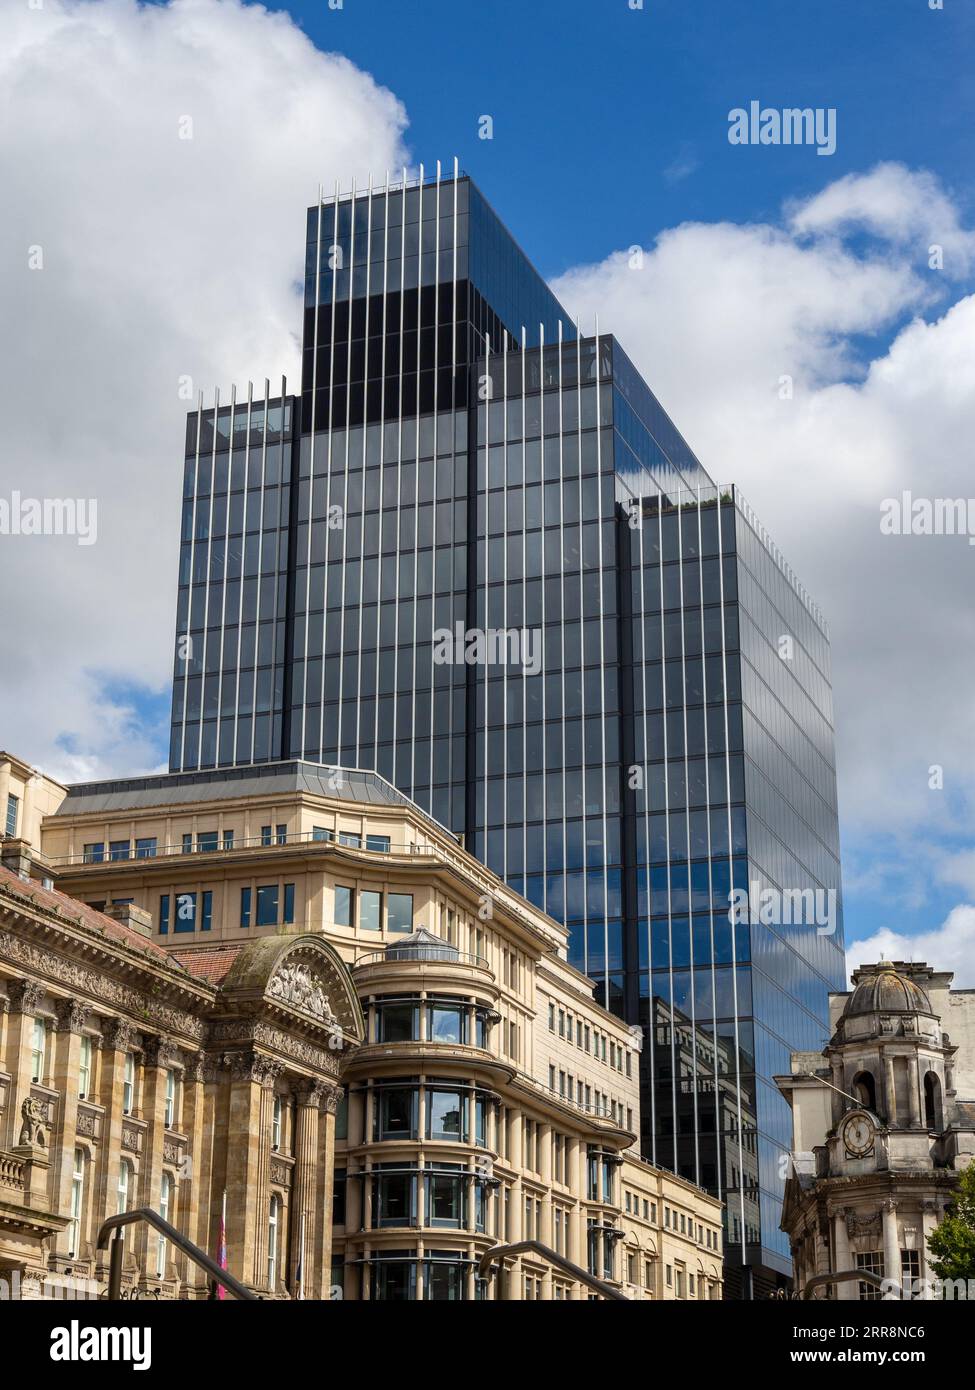 Skyline des Stadtzentrums, Birmingham, Großbritannien; das historische Council House im Vordergrund ein moderner Büroblock im hinteren Teil. Stockfoto